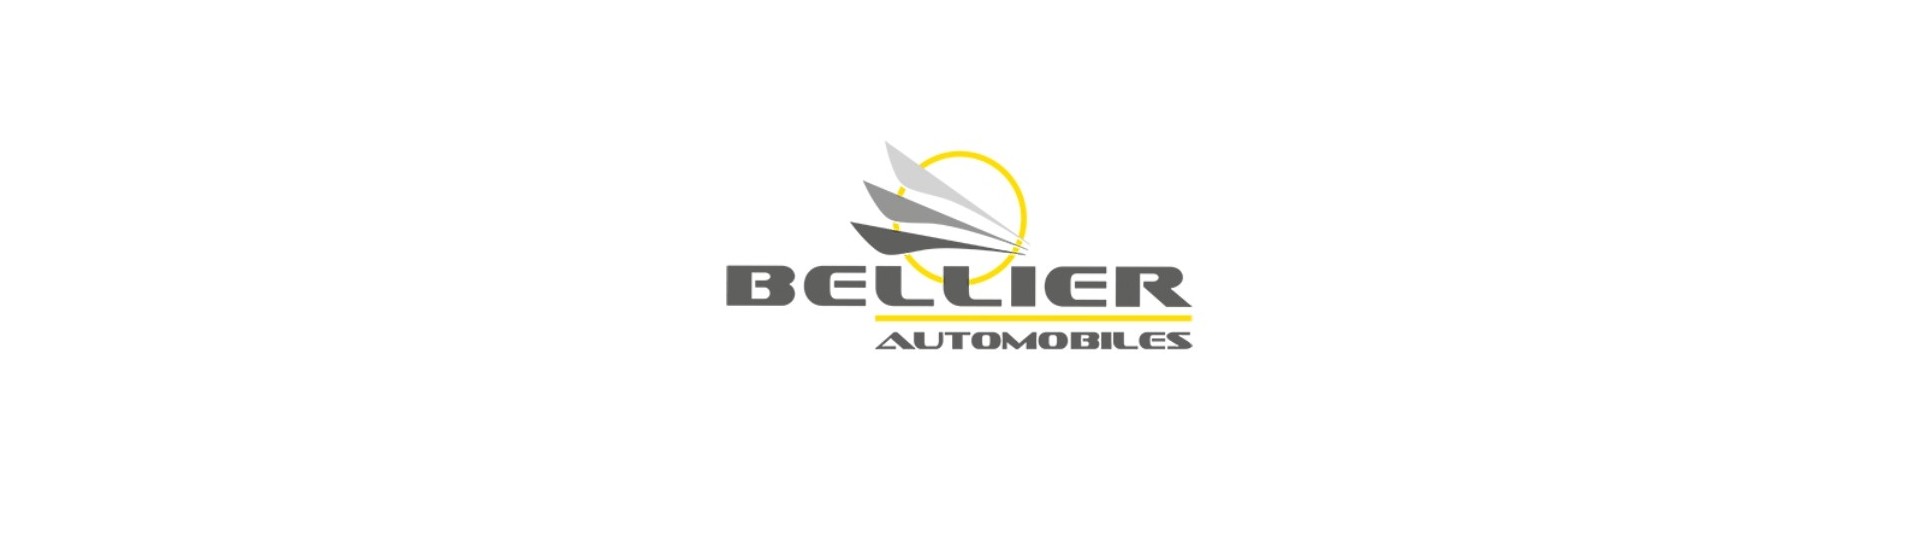 Cablul de număr la cel mai bun preț pentru o mașină fără permis Bellier